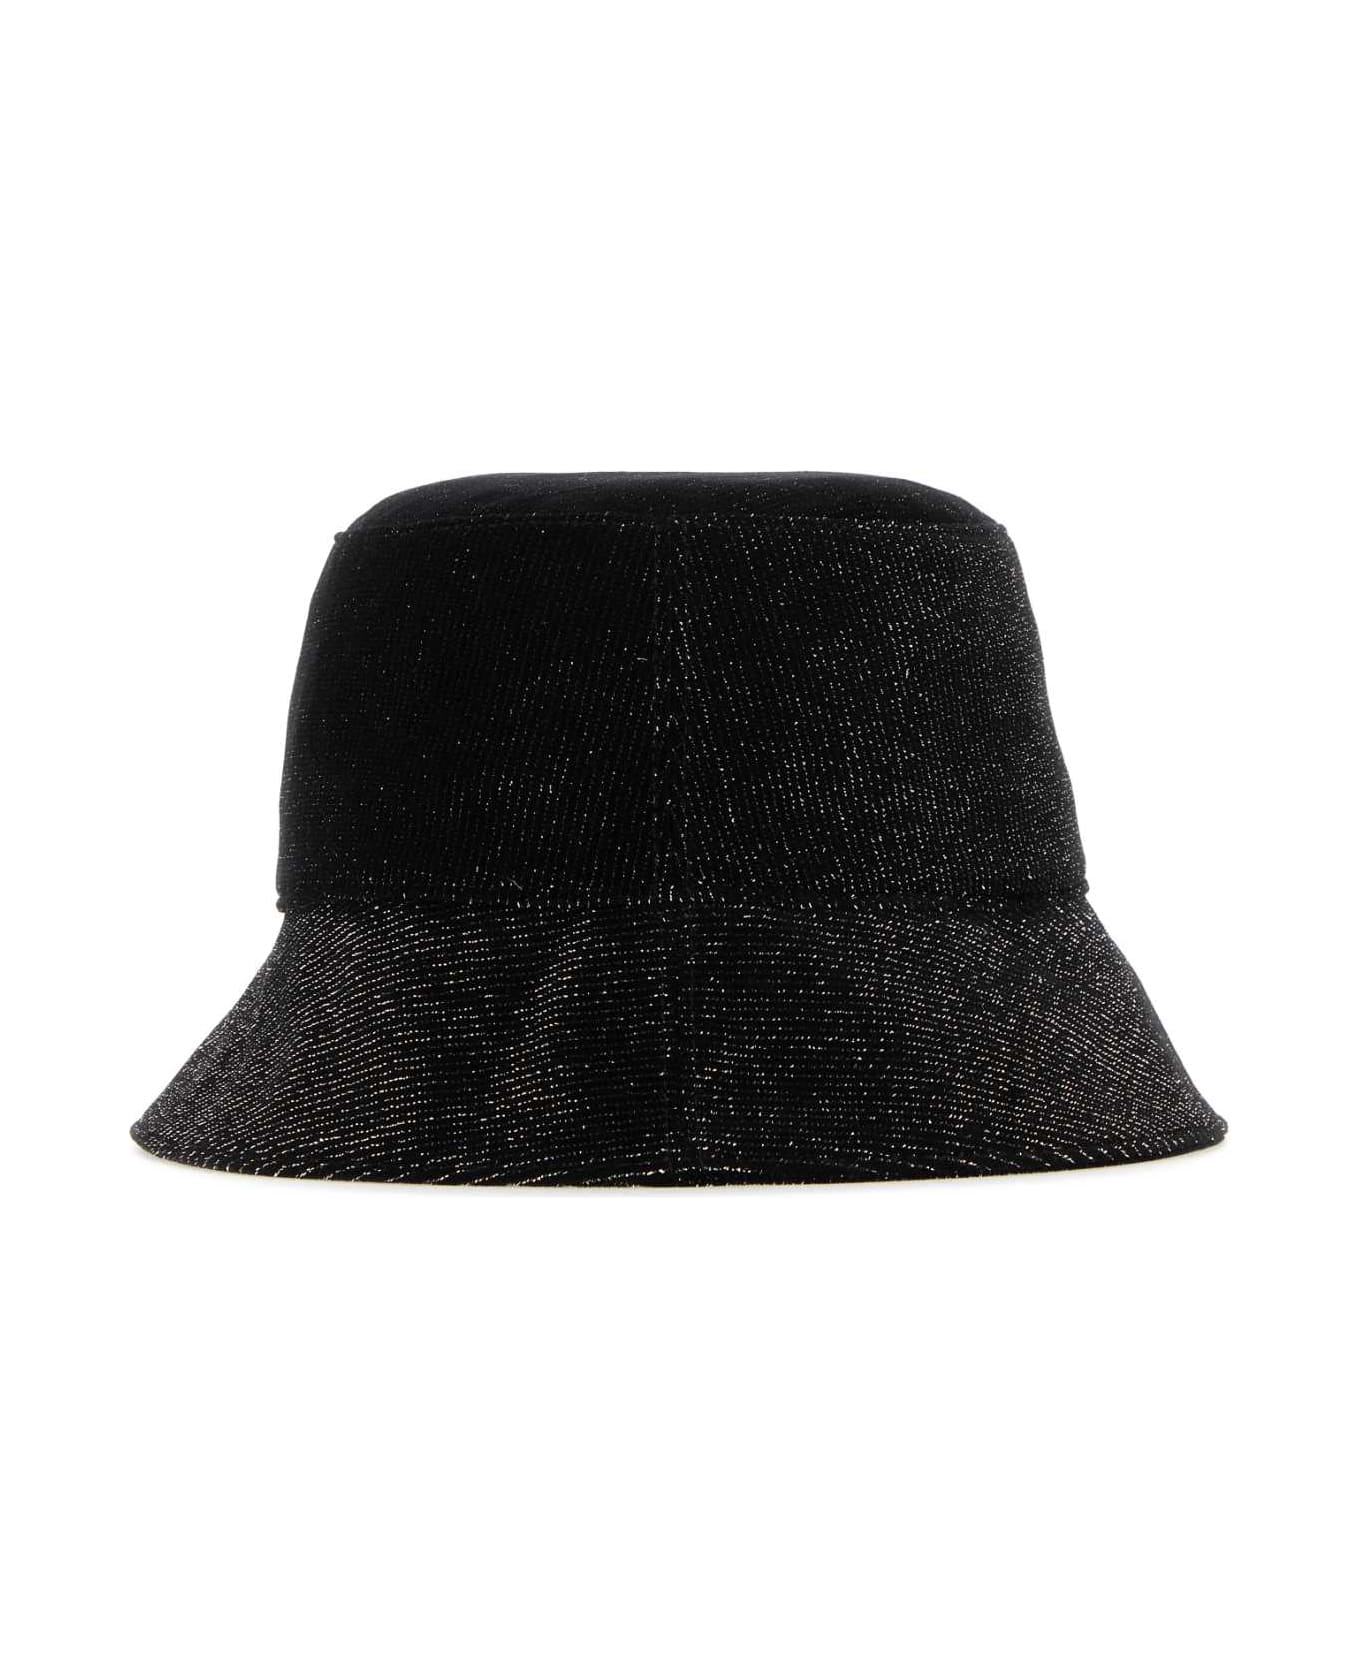 Helen Kaminski Black Velvet Florenze Bucket Hat - BLACKSPARKLE ヘアアクセサリー